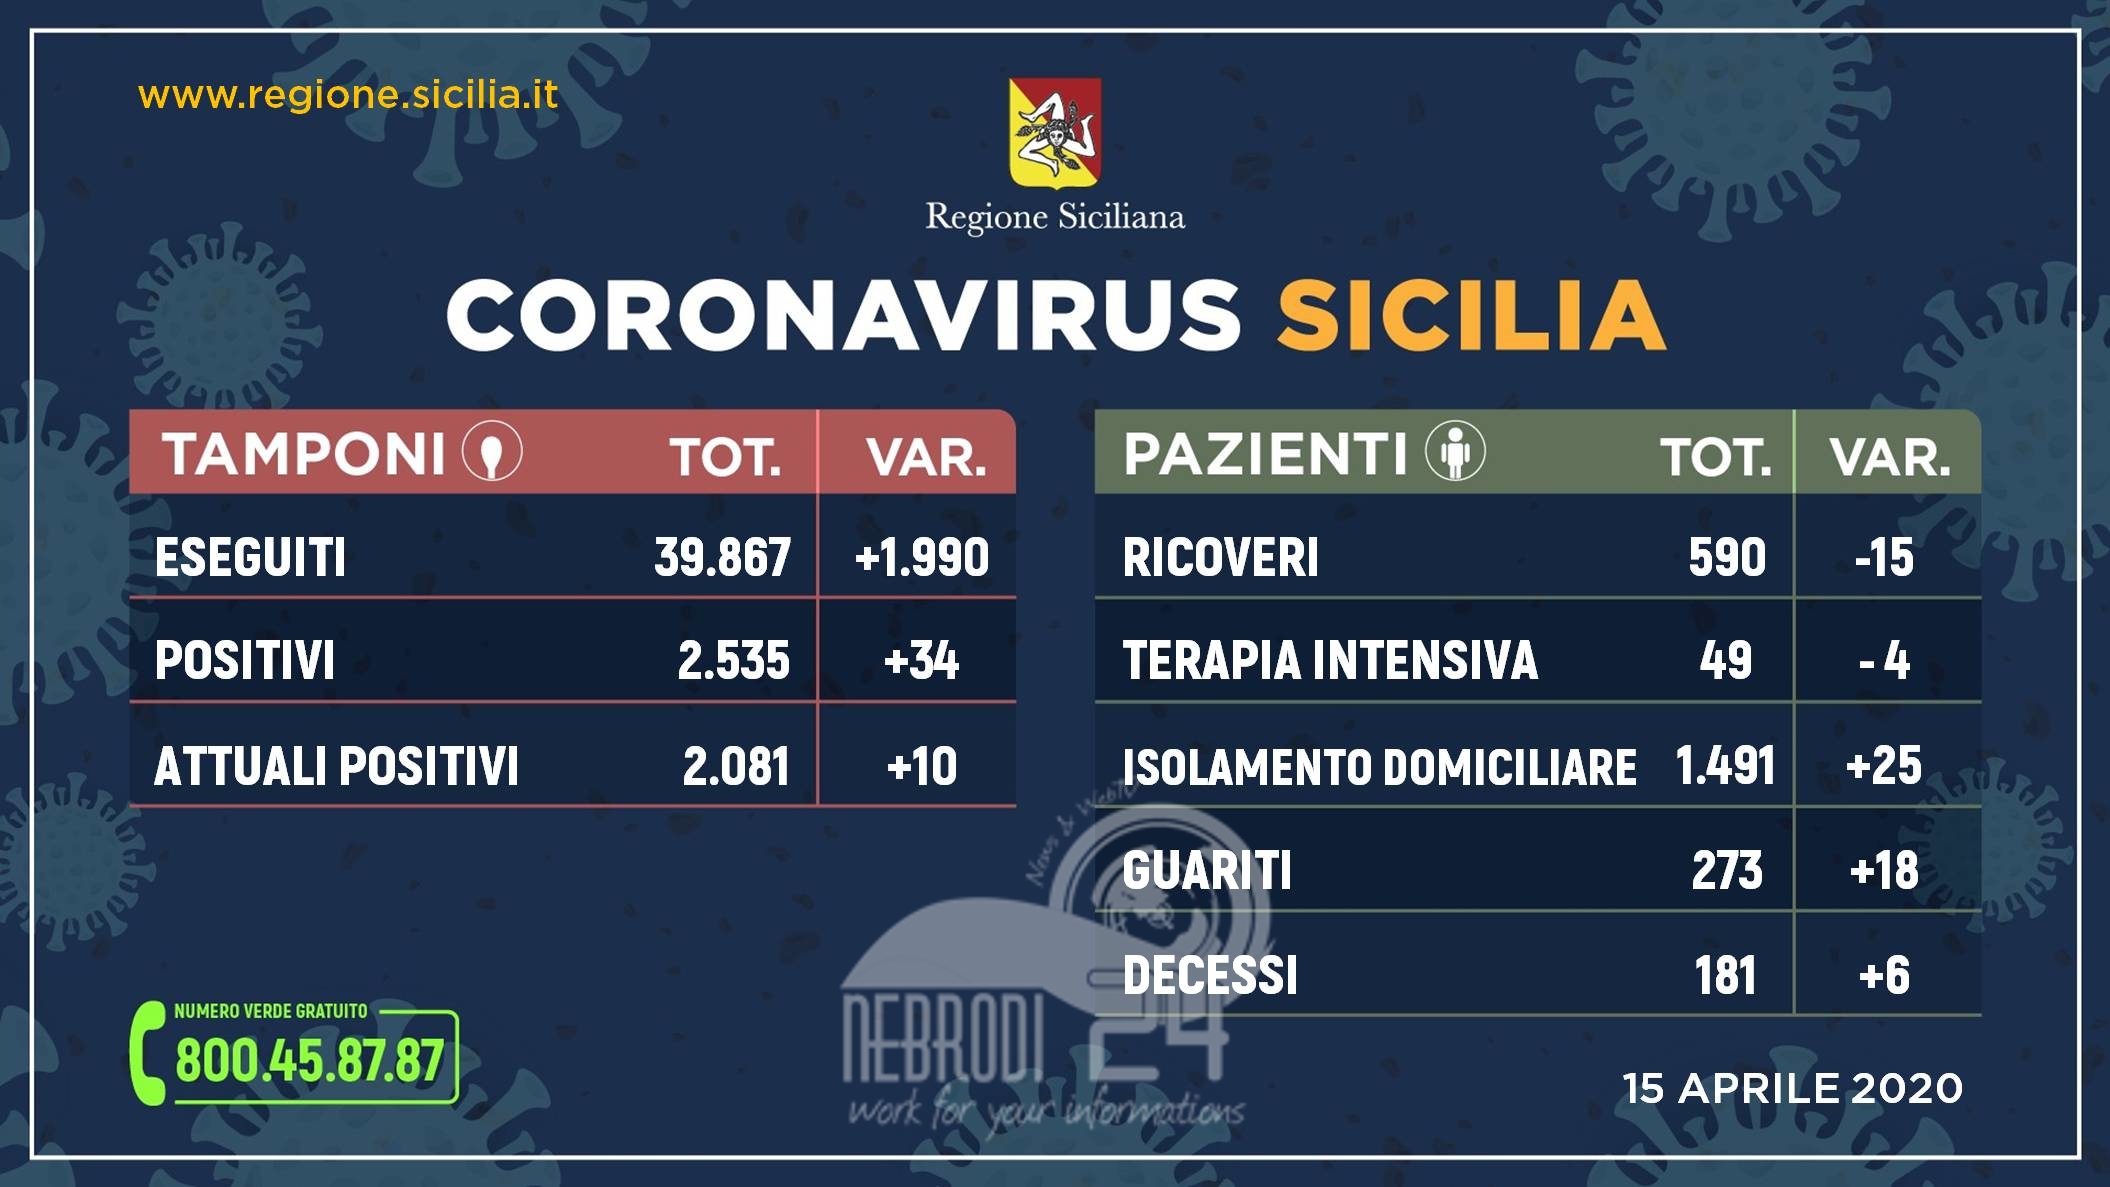 Coronavirus: l’aggiornamento in Sicilia, 2.081 positivi (+34 rispetto ad ieri) e 273 guariti